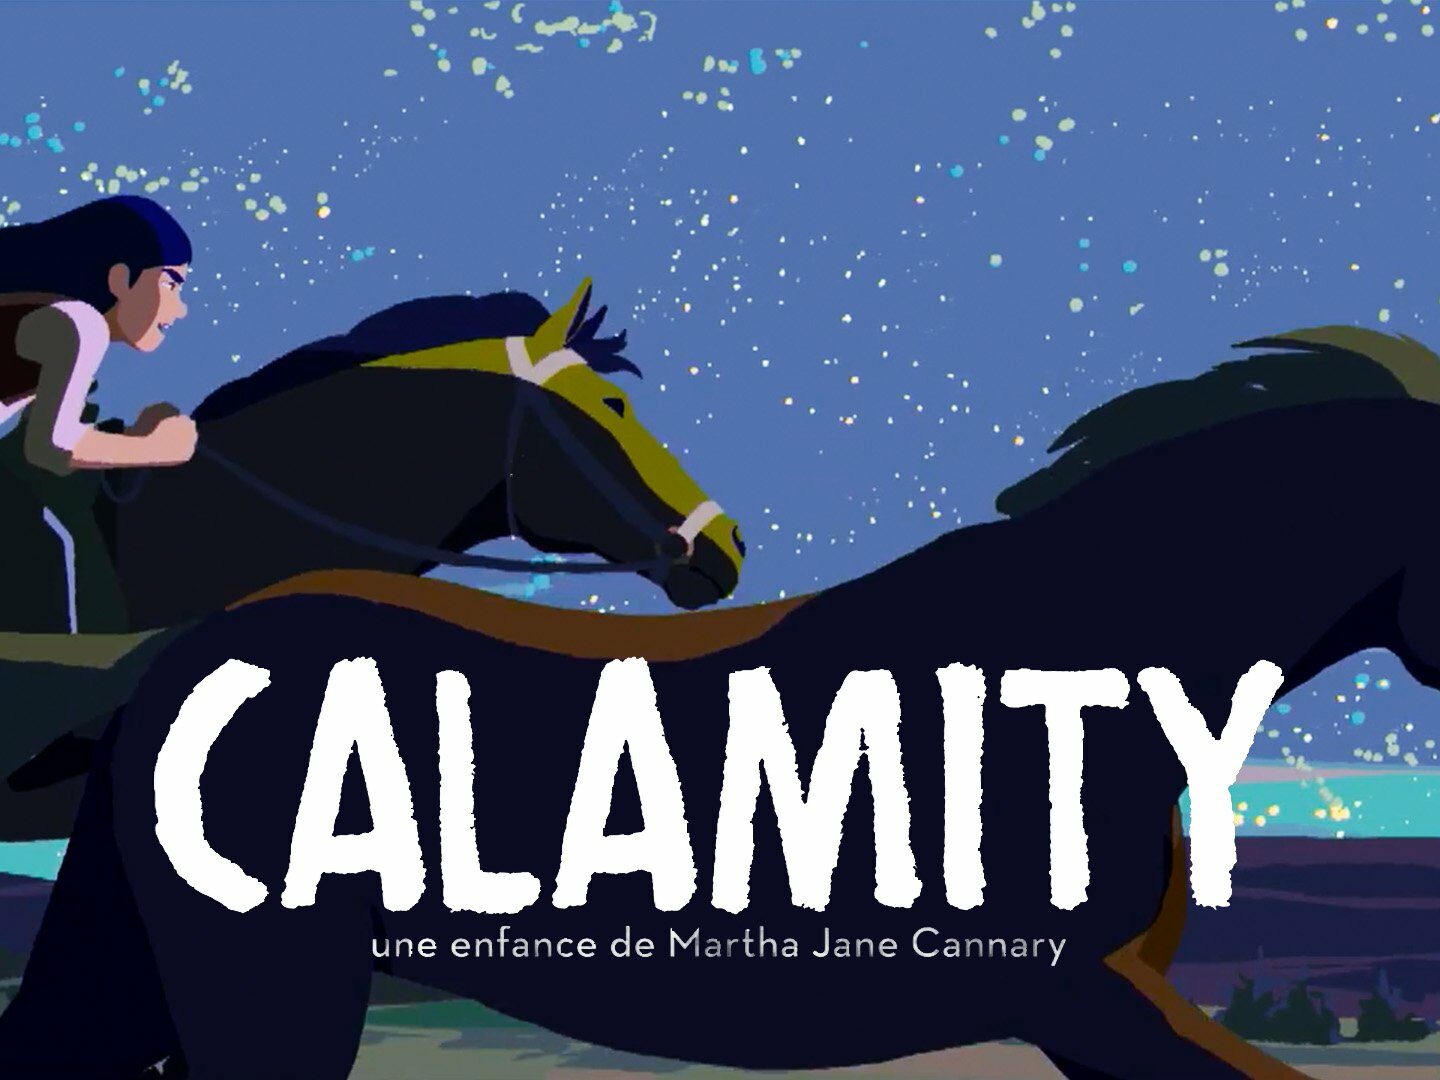 Calamity : A childhood of Martha Jane Cannary